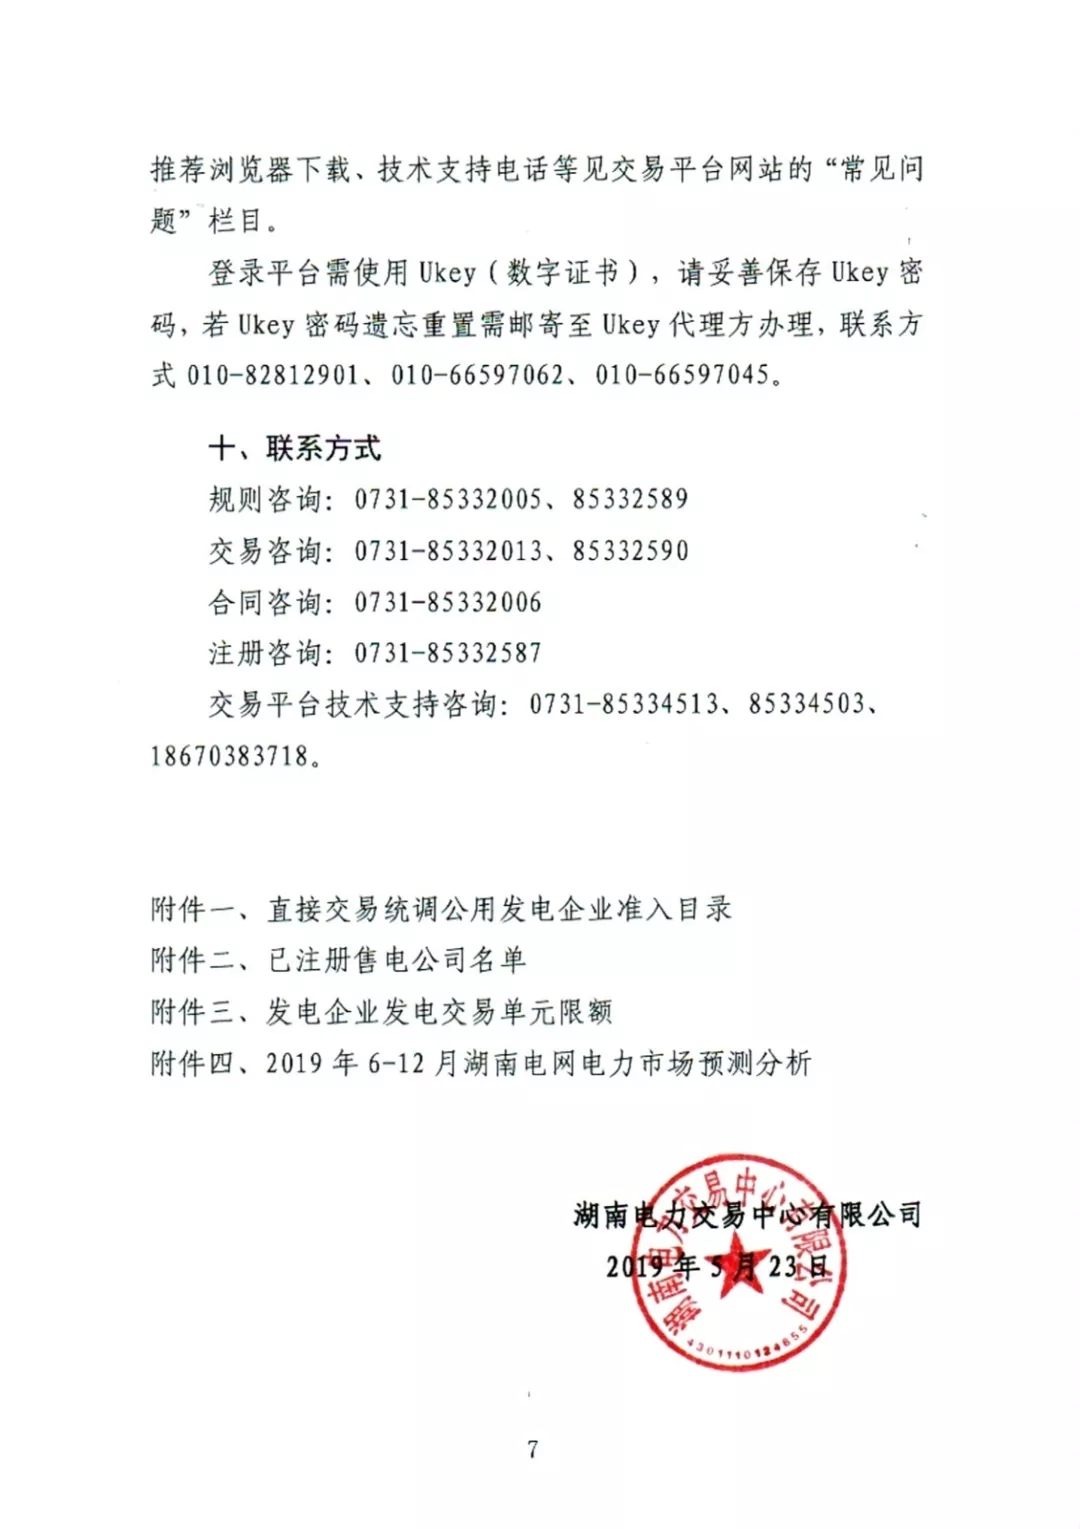 湖南电力交易中心2019年6-12月电力市场交易公告：各月成交电量不设具体限额